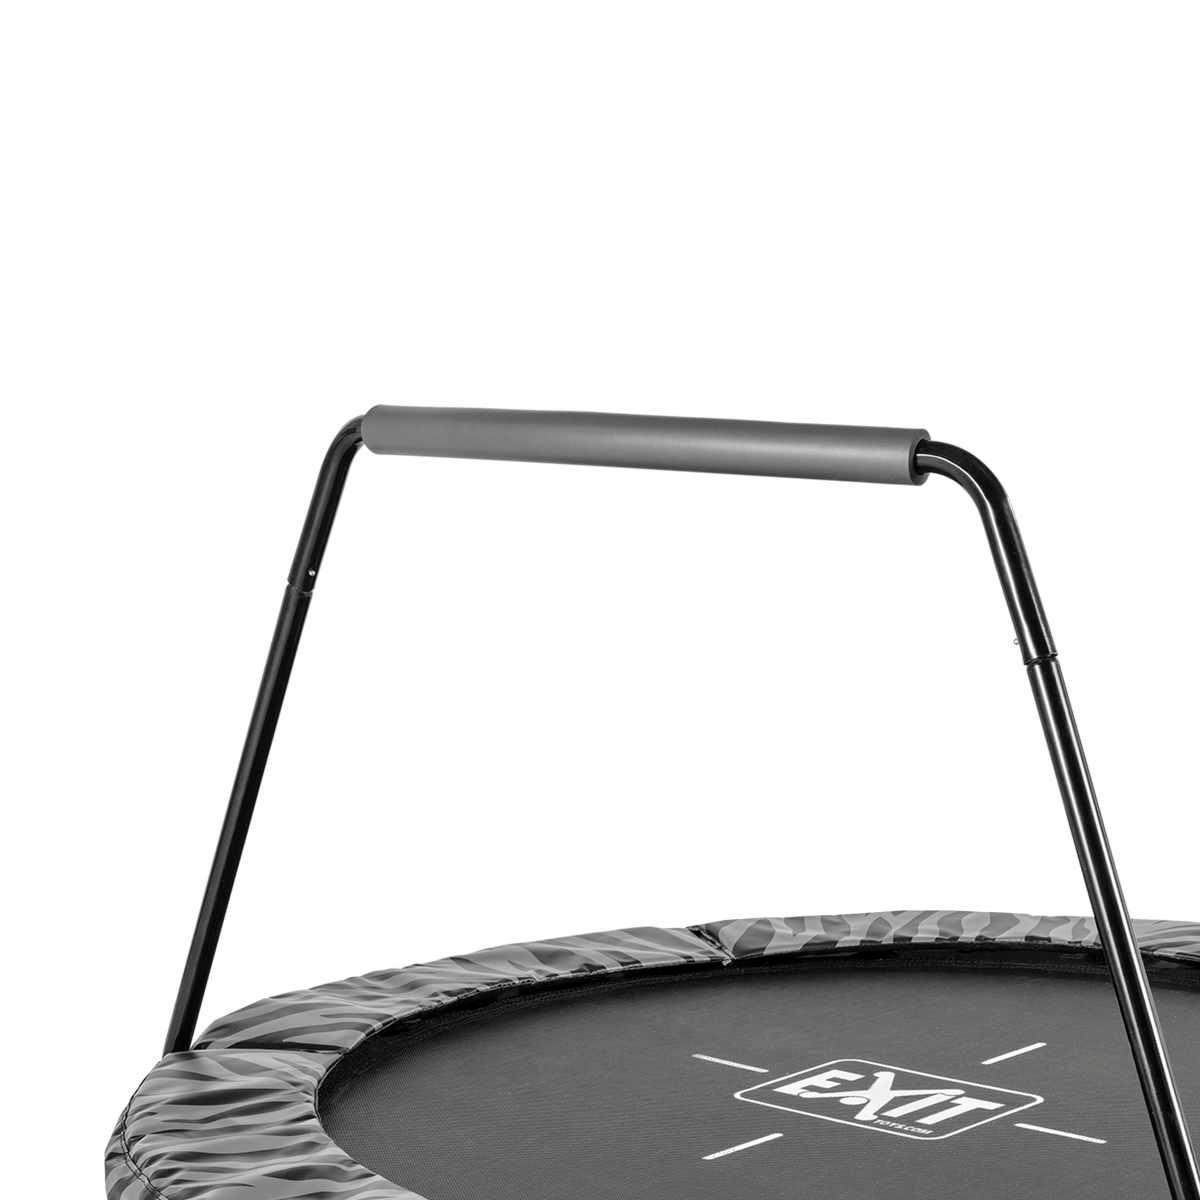 Cama elástica EXIT Tiggy junior de 140 cm de diámetro con barra black/grey